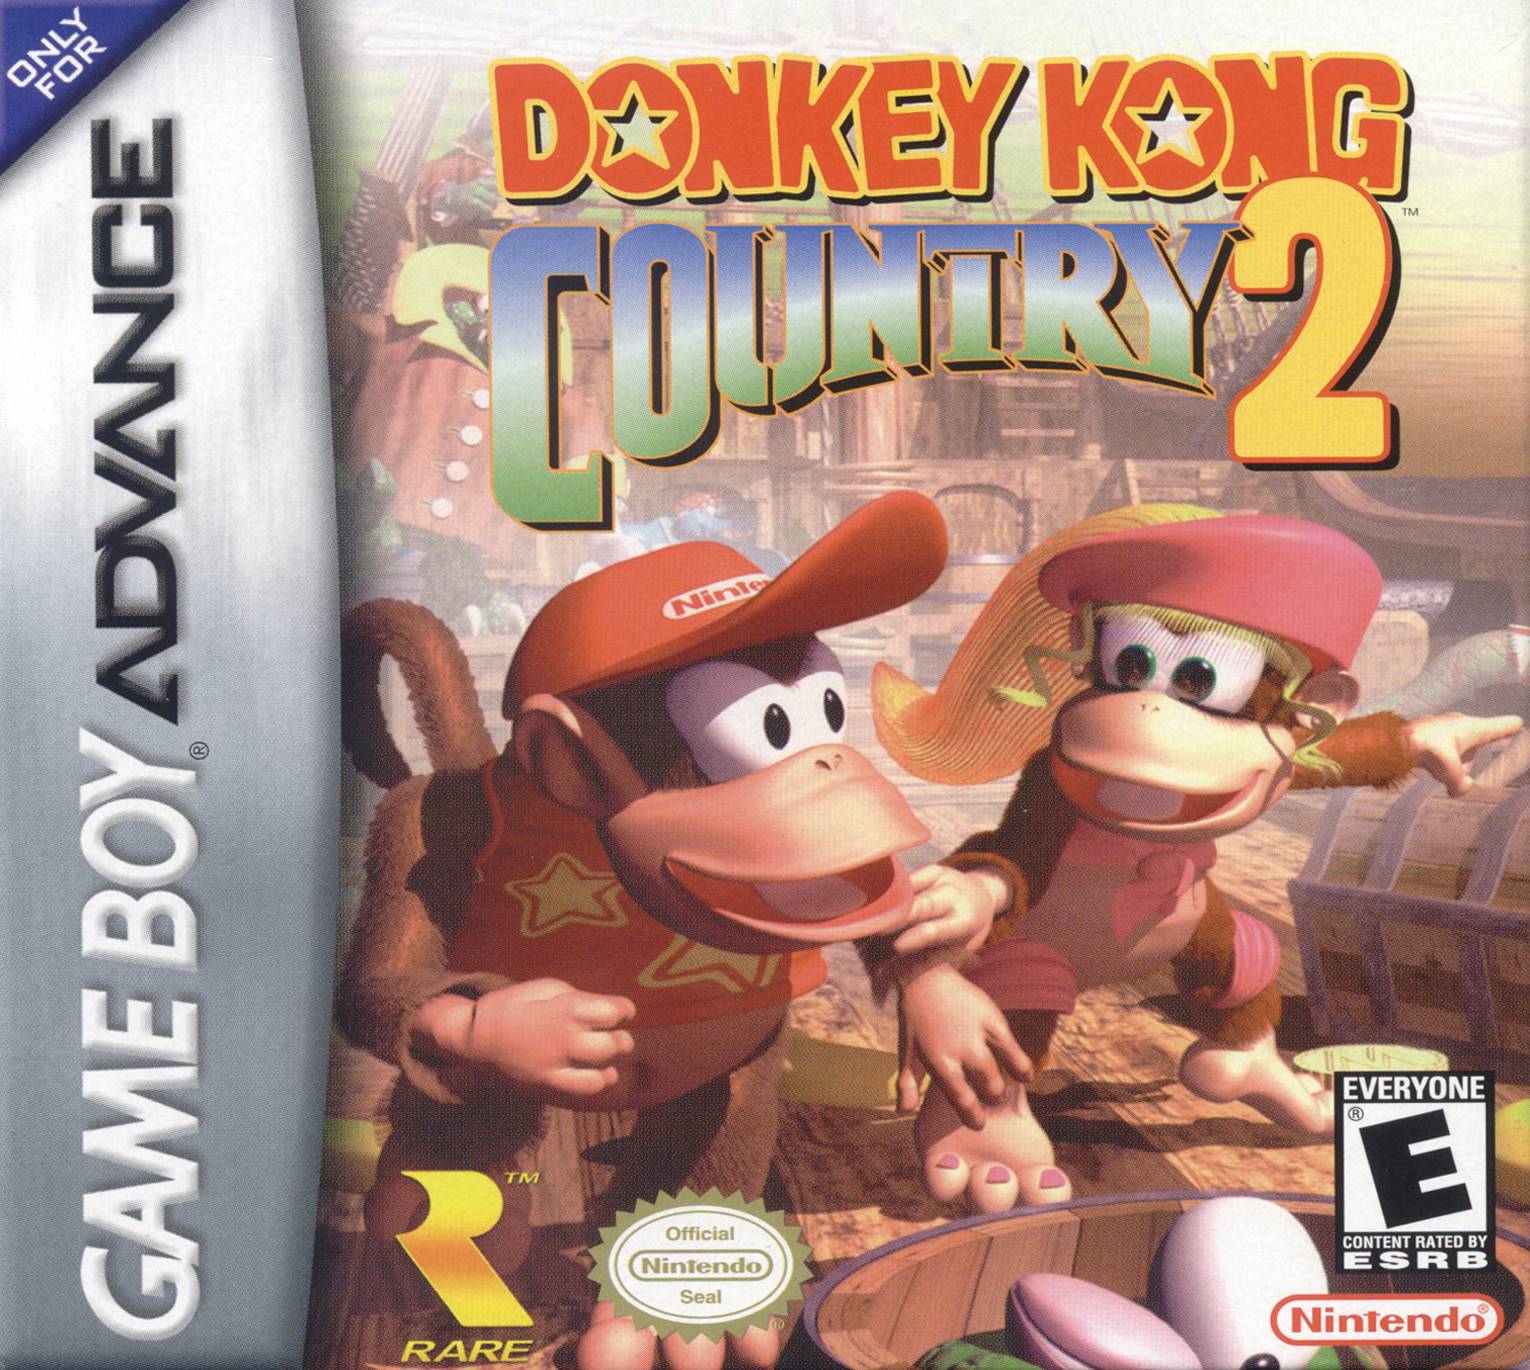 Nintendo игры на 2. Игра Donkey Kong Country. Донки Конг игра Нинтендо. Игра на плейстейшен Дон Кигонг. Нинтендо обезьянки игра.